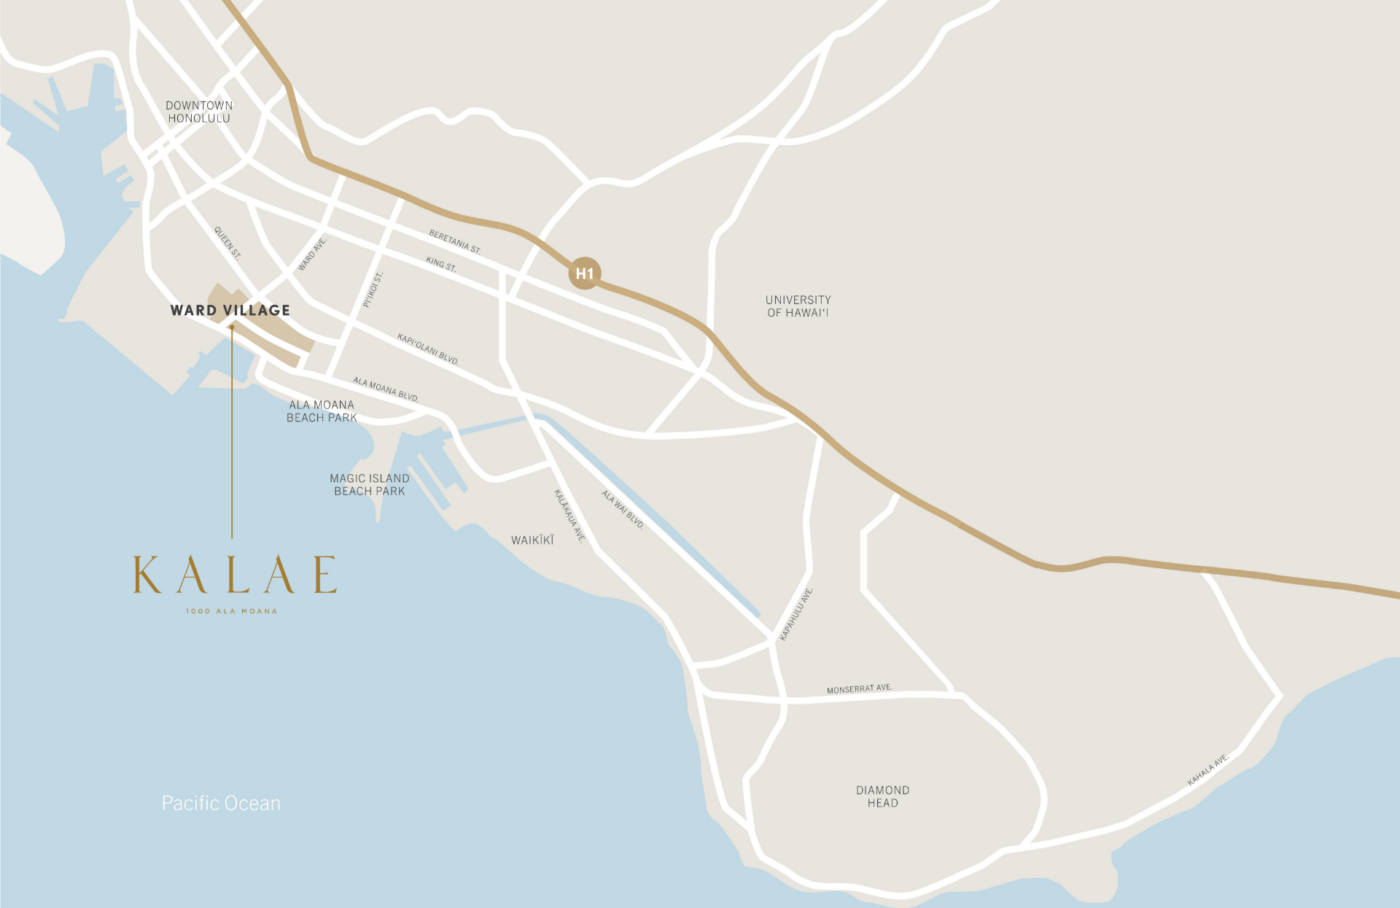 欧胡岛南岸地图，有卡莱、沃德村的叫法。